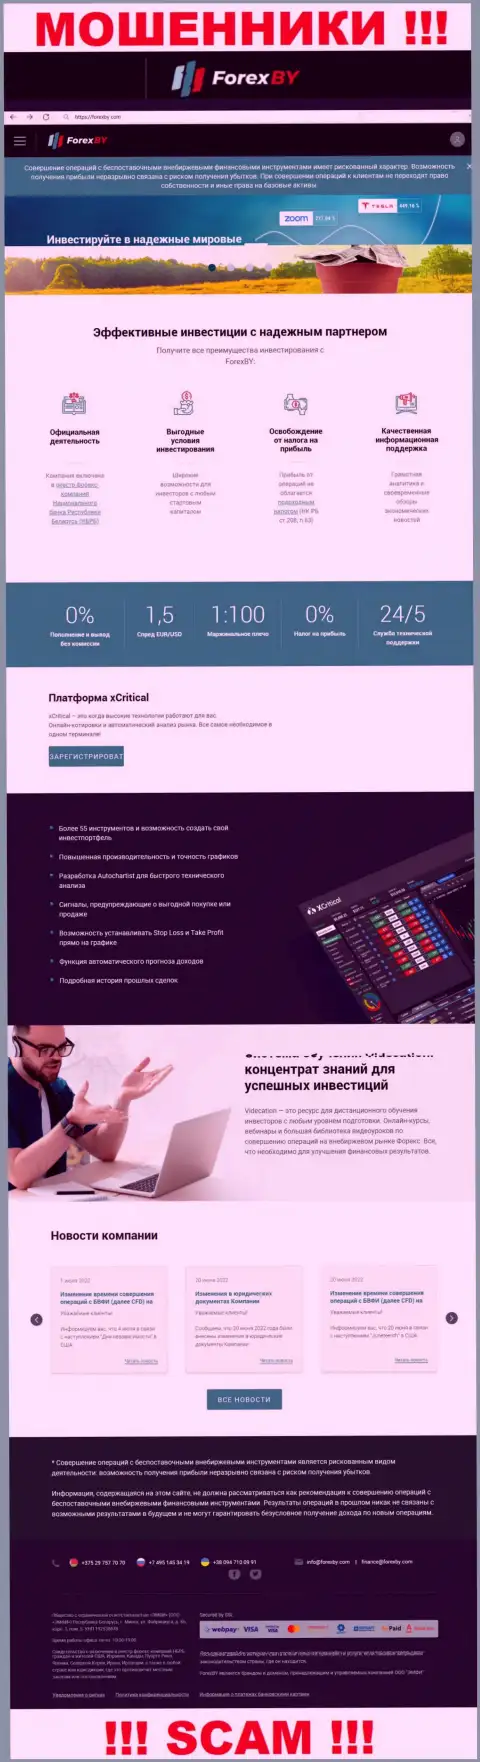 Официальный портал мошенников ФорексБИ